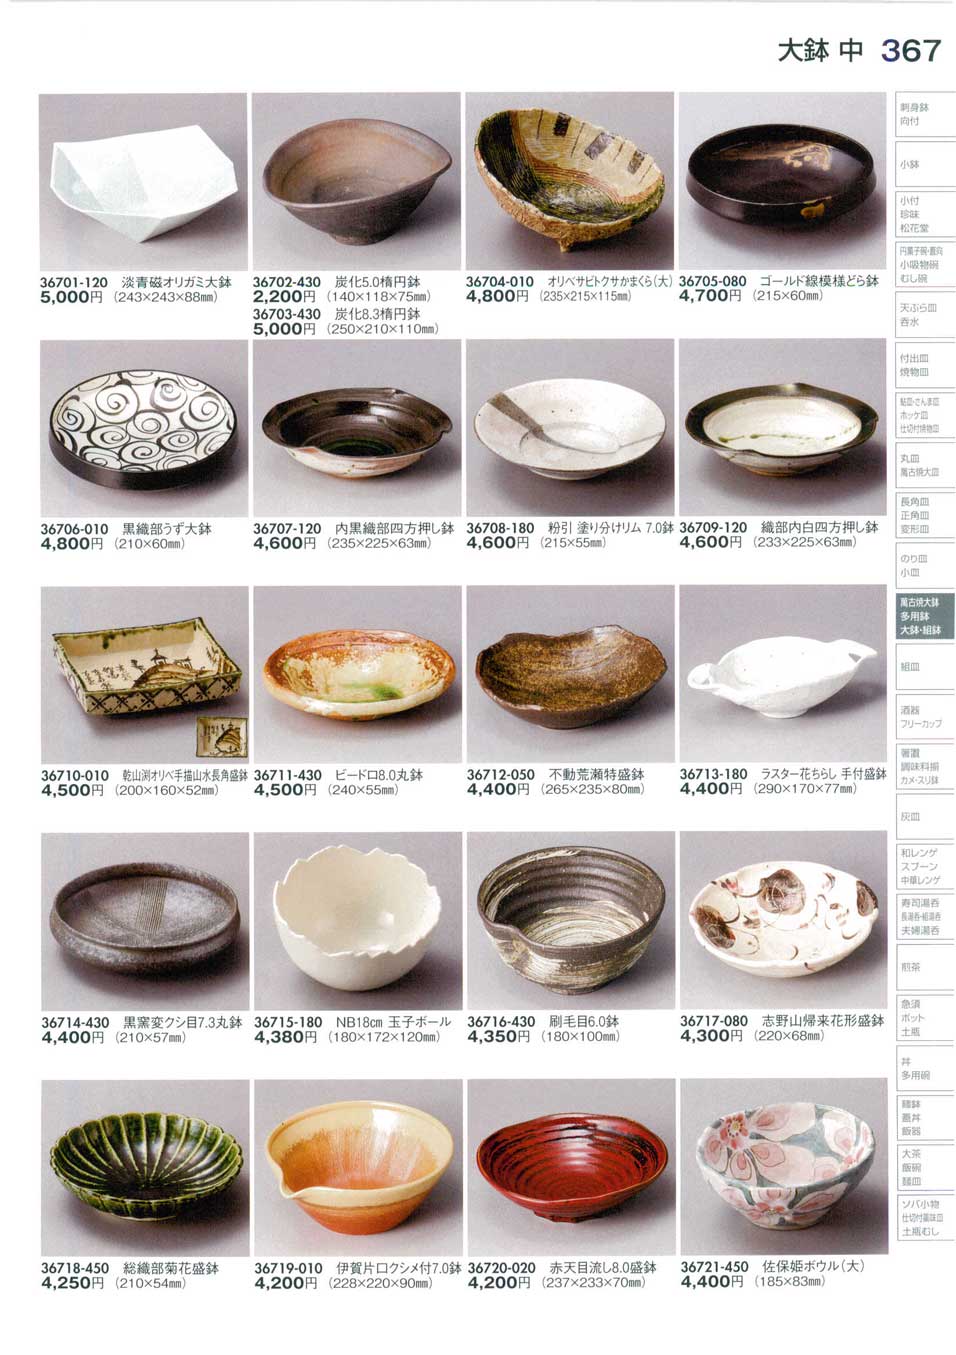 食器 盛鉢（中）Serving Bowl (Medium) 陶里３０－367ページ